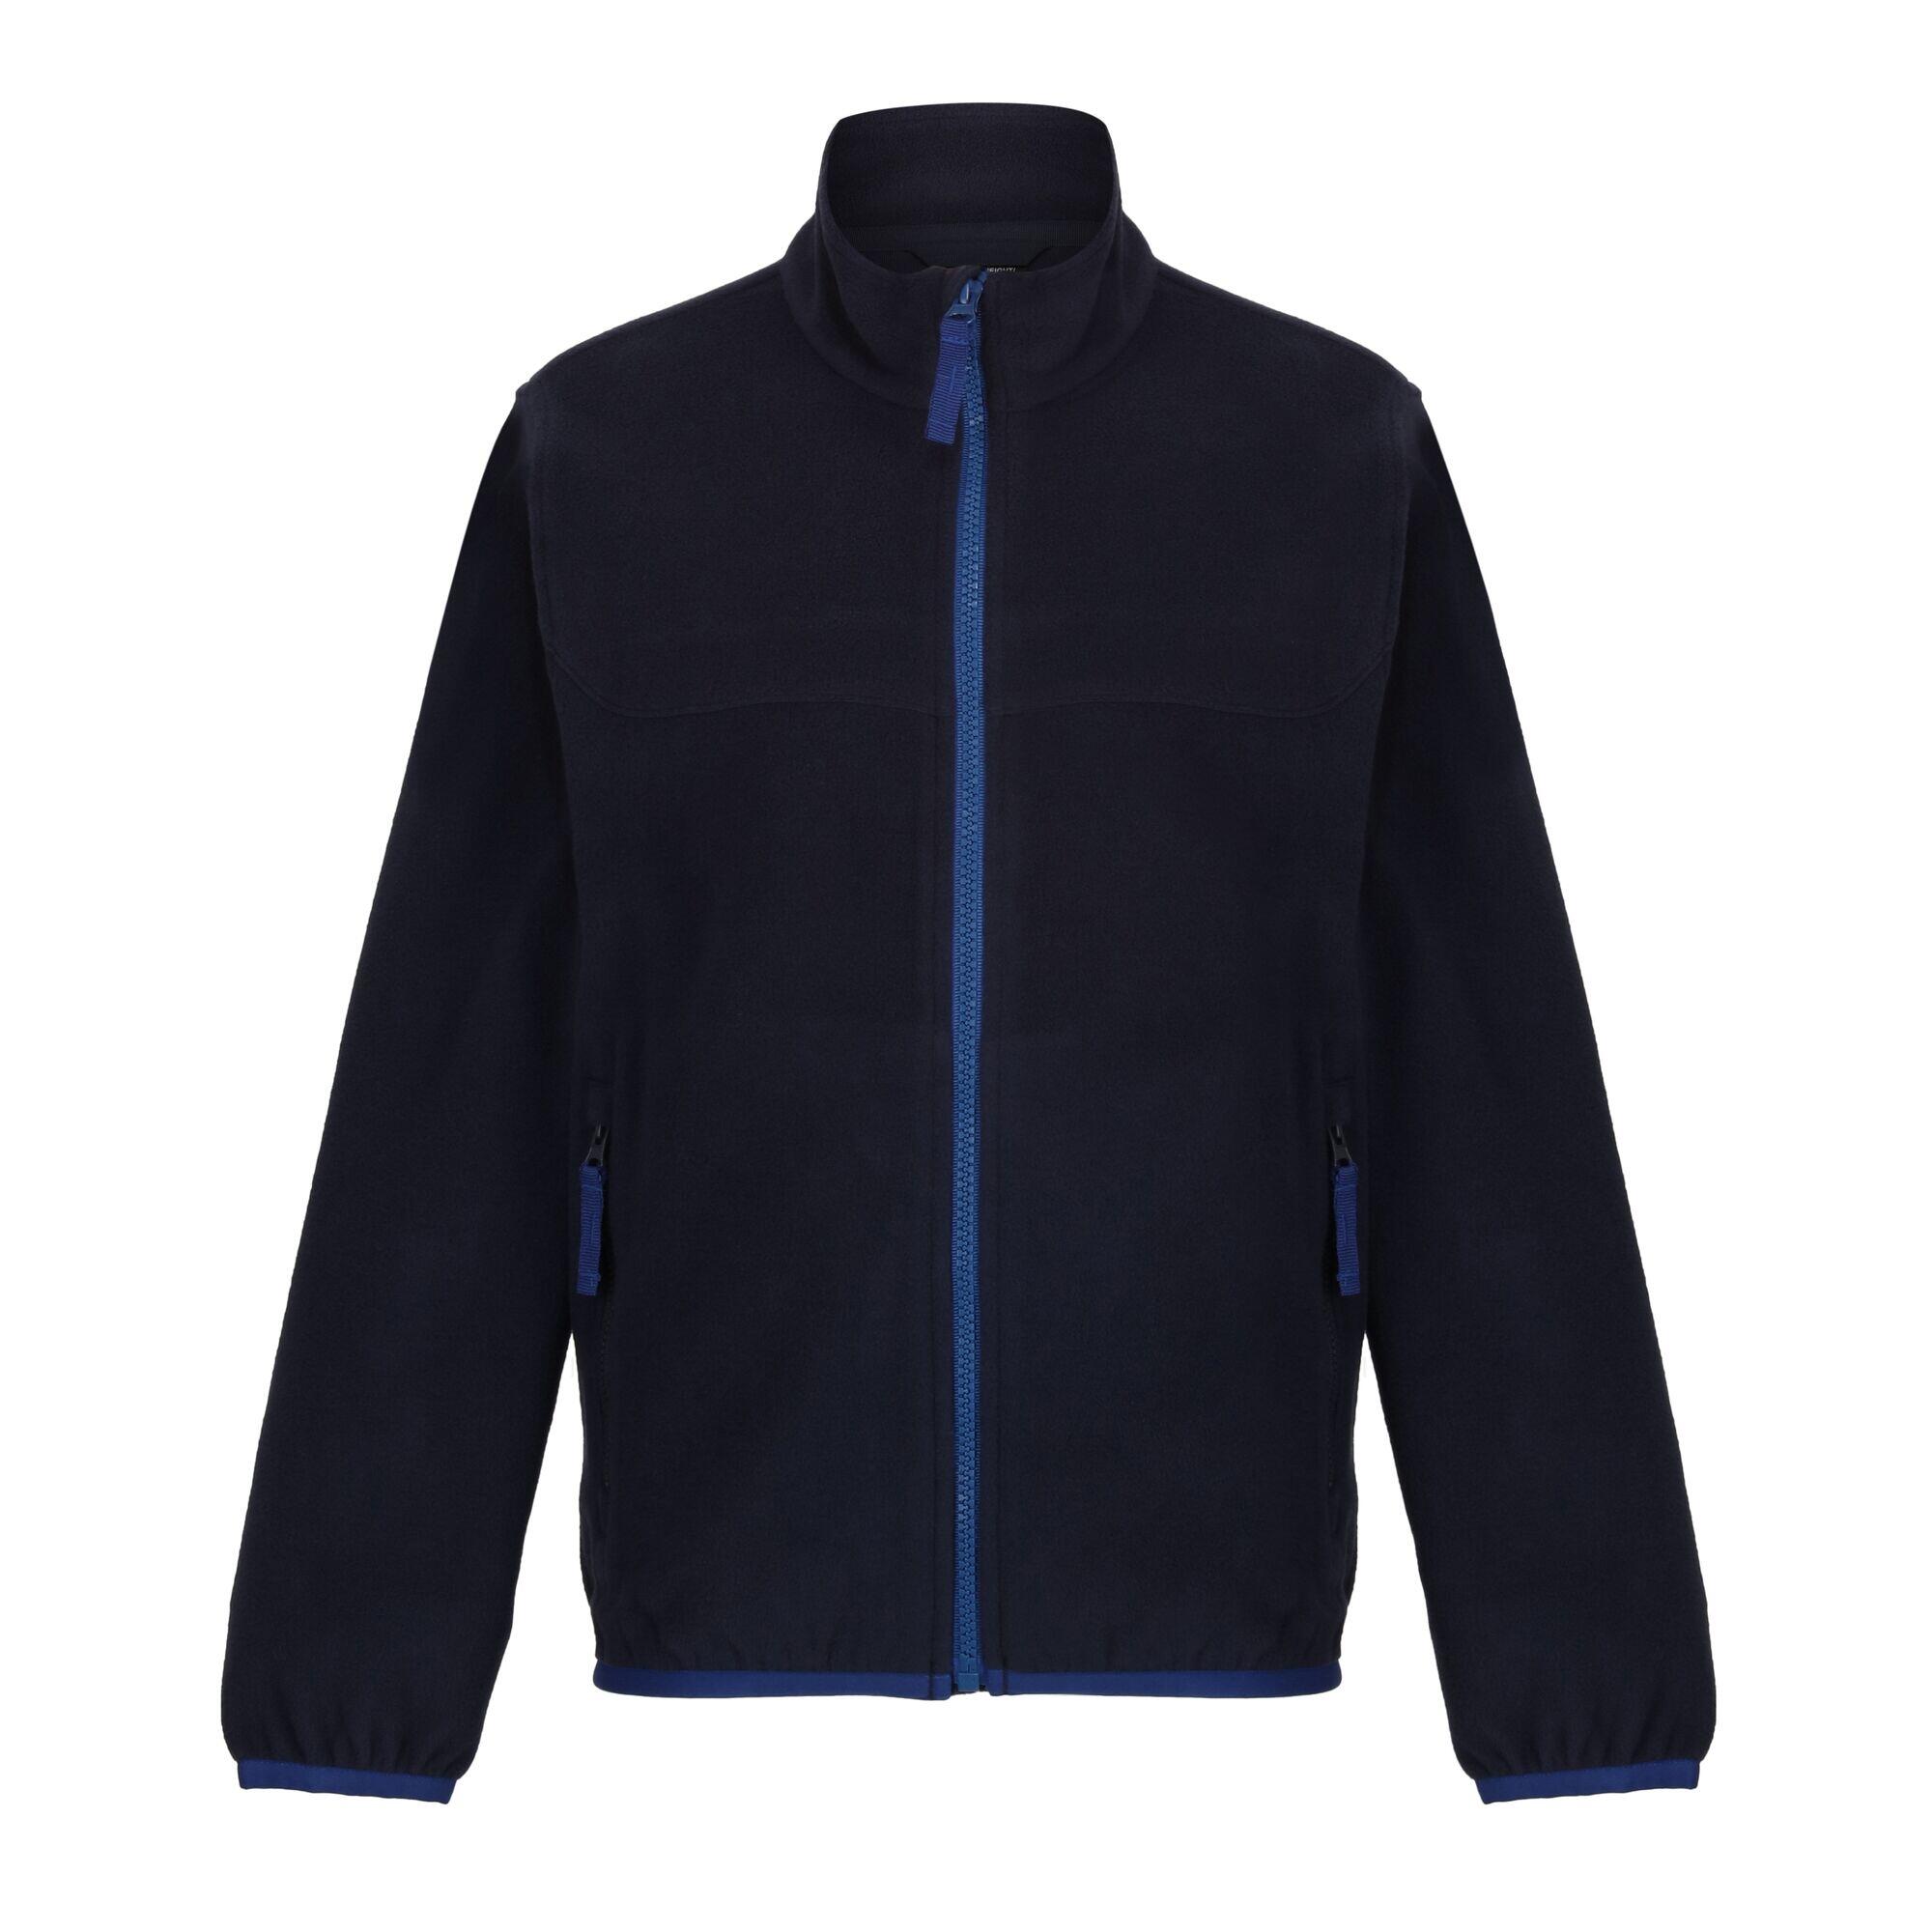 REGATTA Childrens/Kids Microfleece Full Zip Fleece Jacket (Navy)